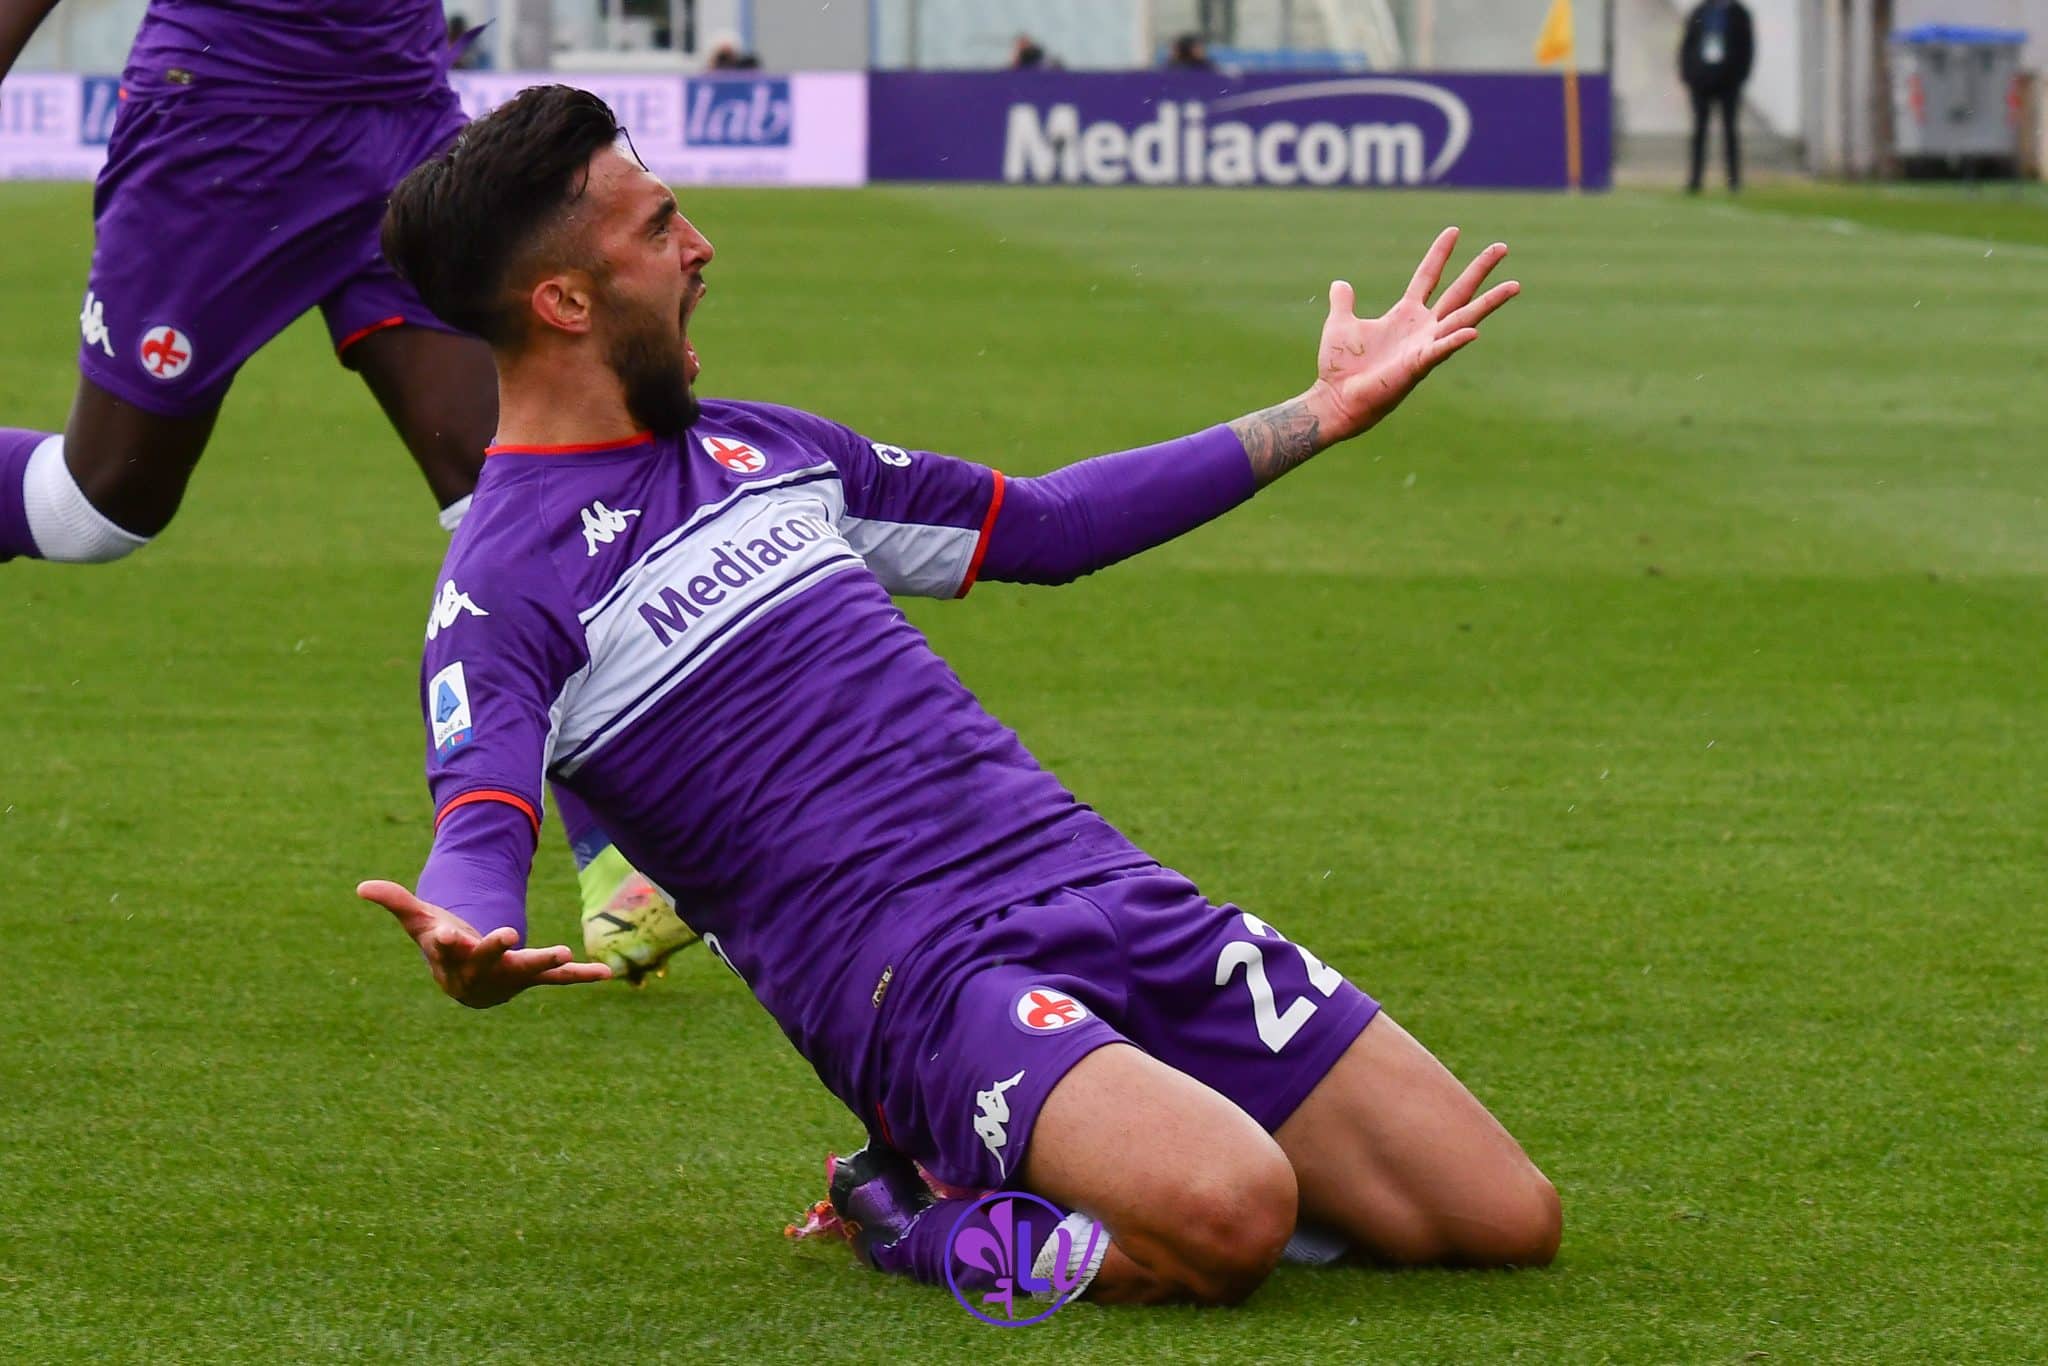 Speedy Gonzalez deve caricarsi la Fiorentina sulle spalle: 2 gol e 2 assist nelle ultime 4